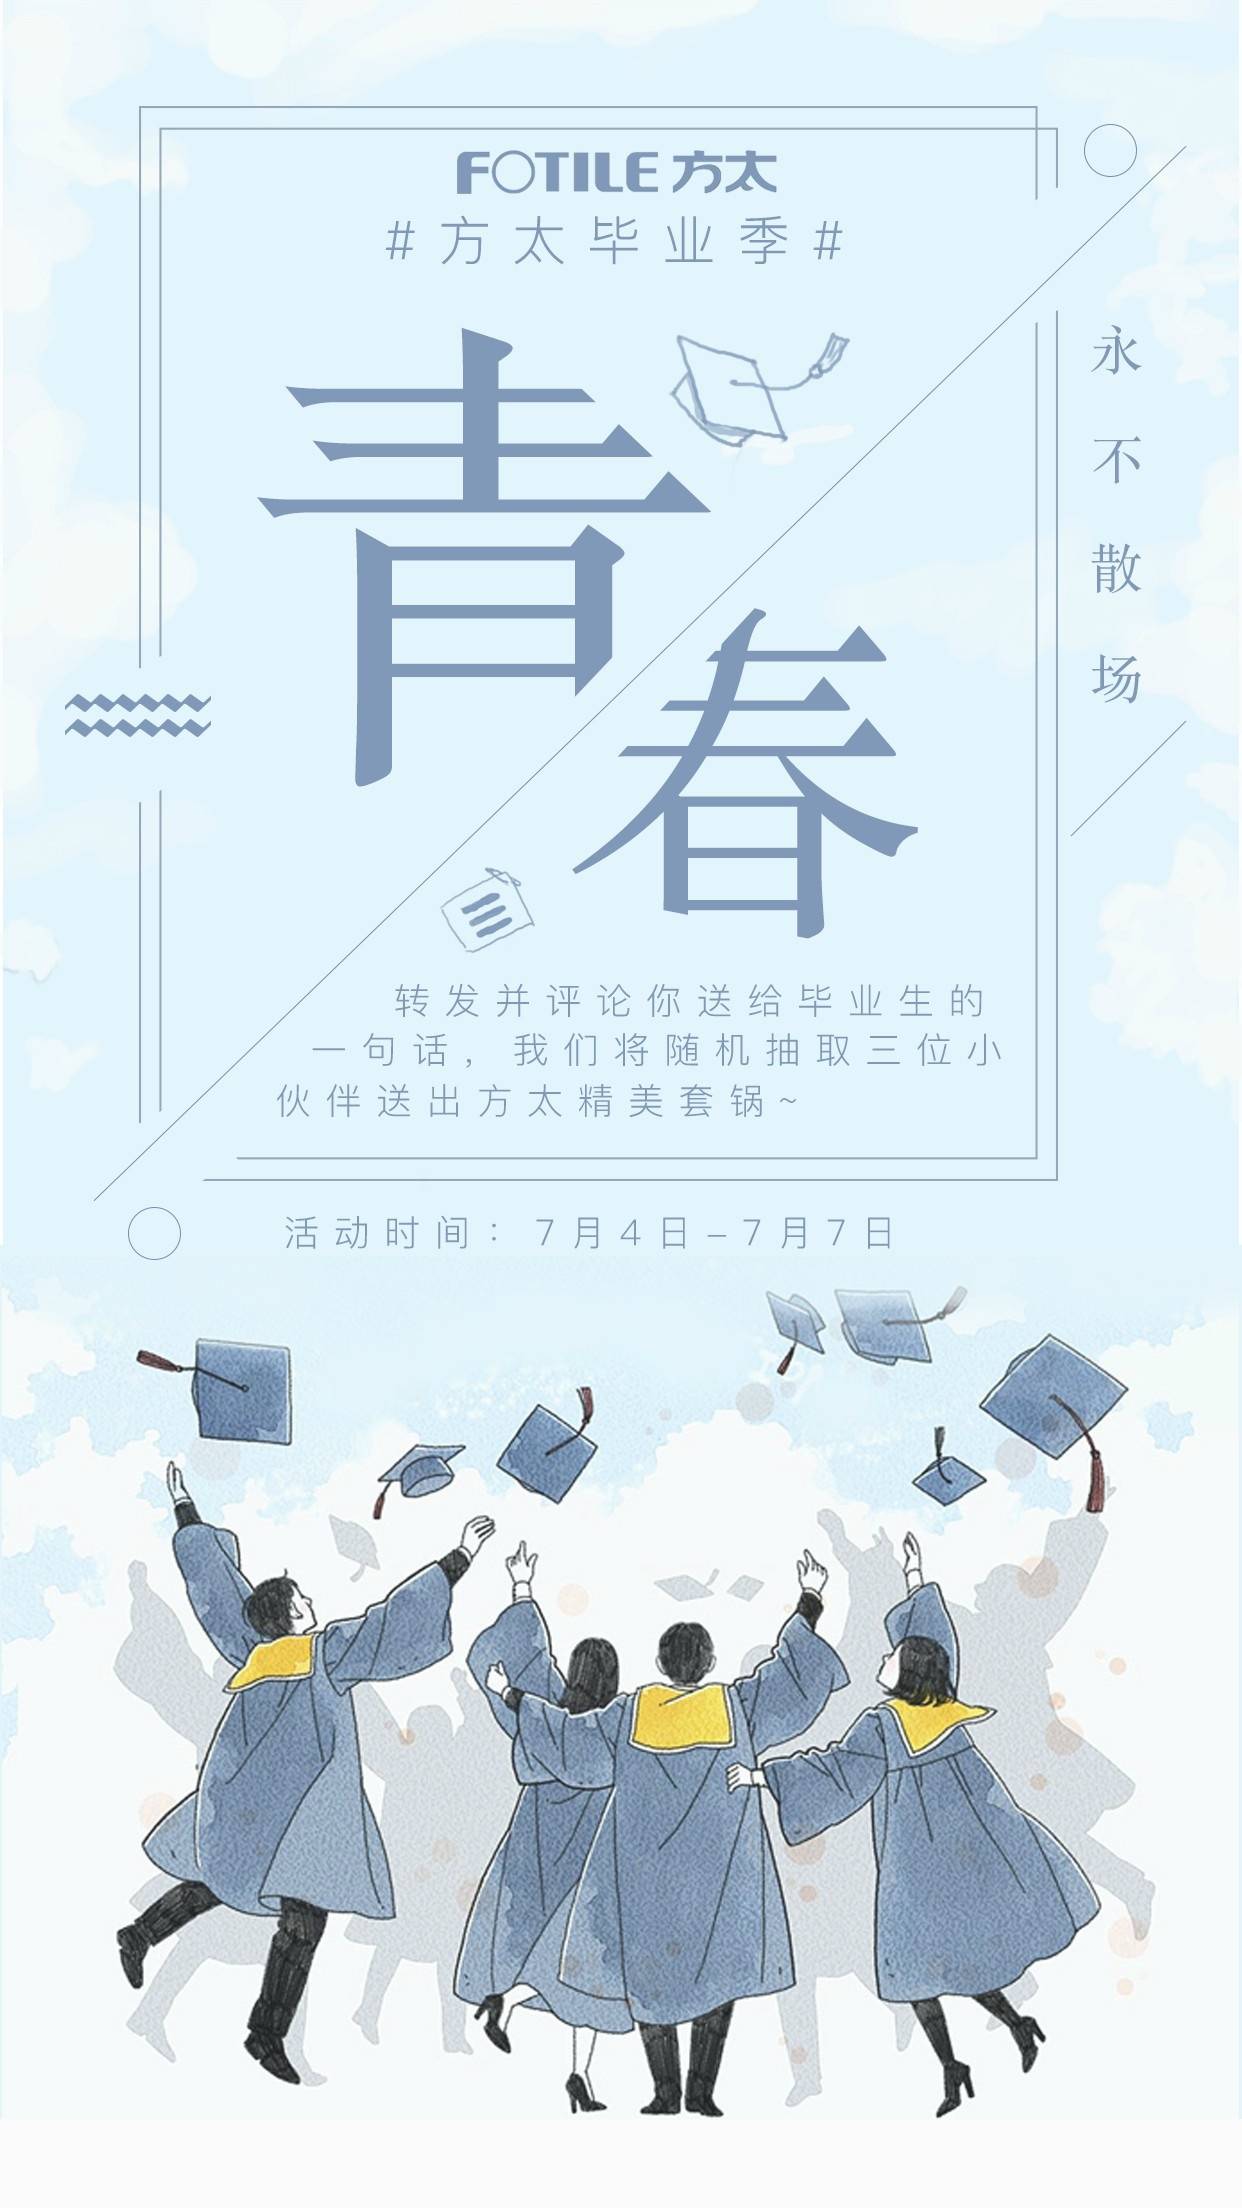 方太官方微博主题海报(包括已发布的部分)